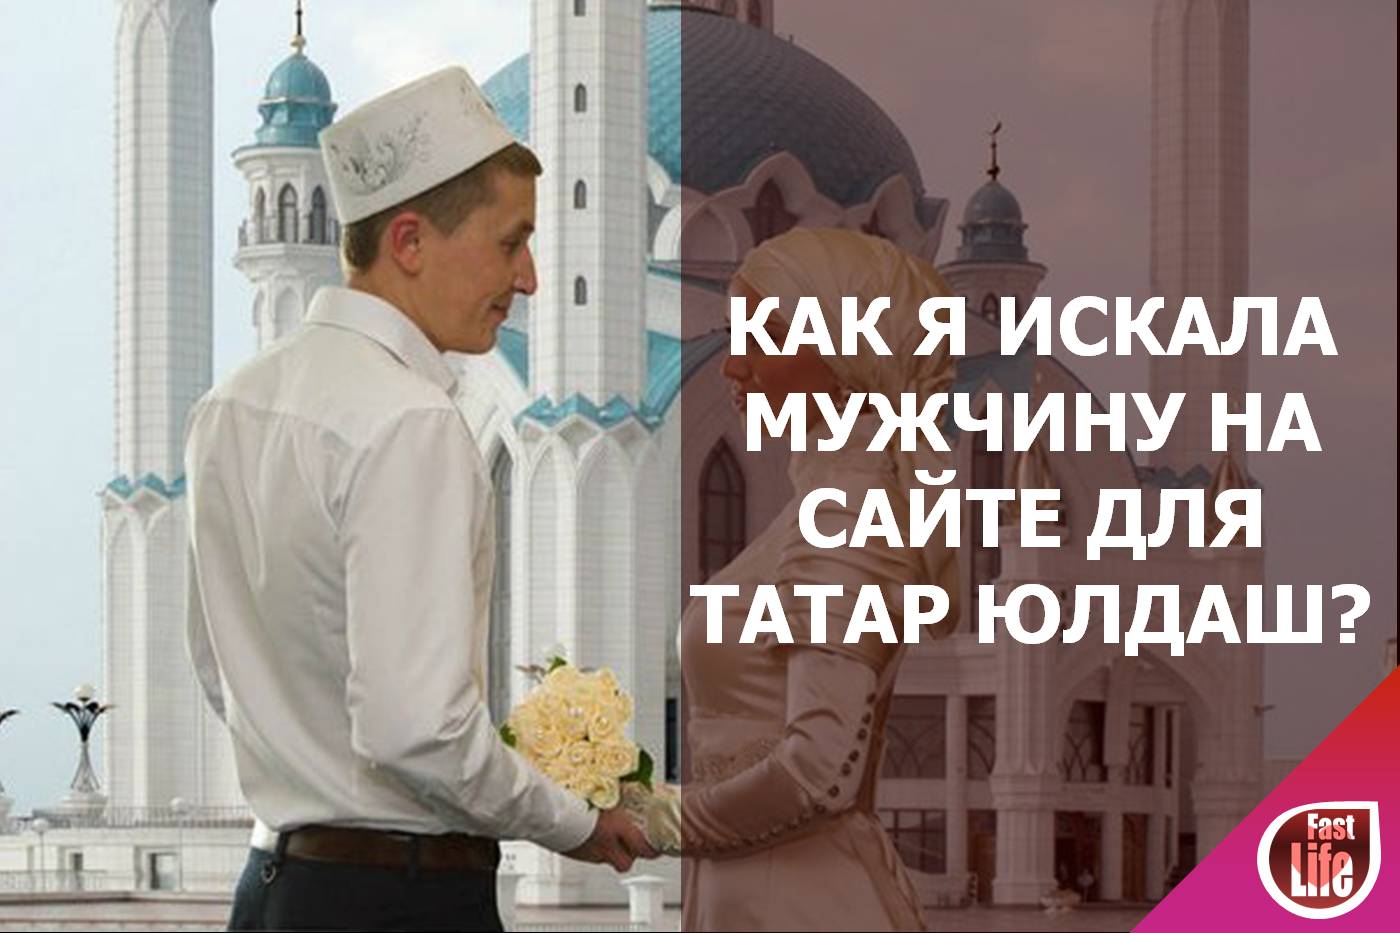 Юлдаш - сайт знакомств для татар